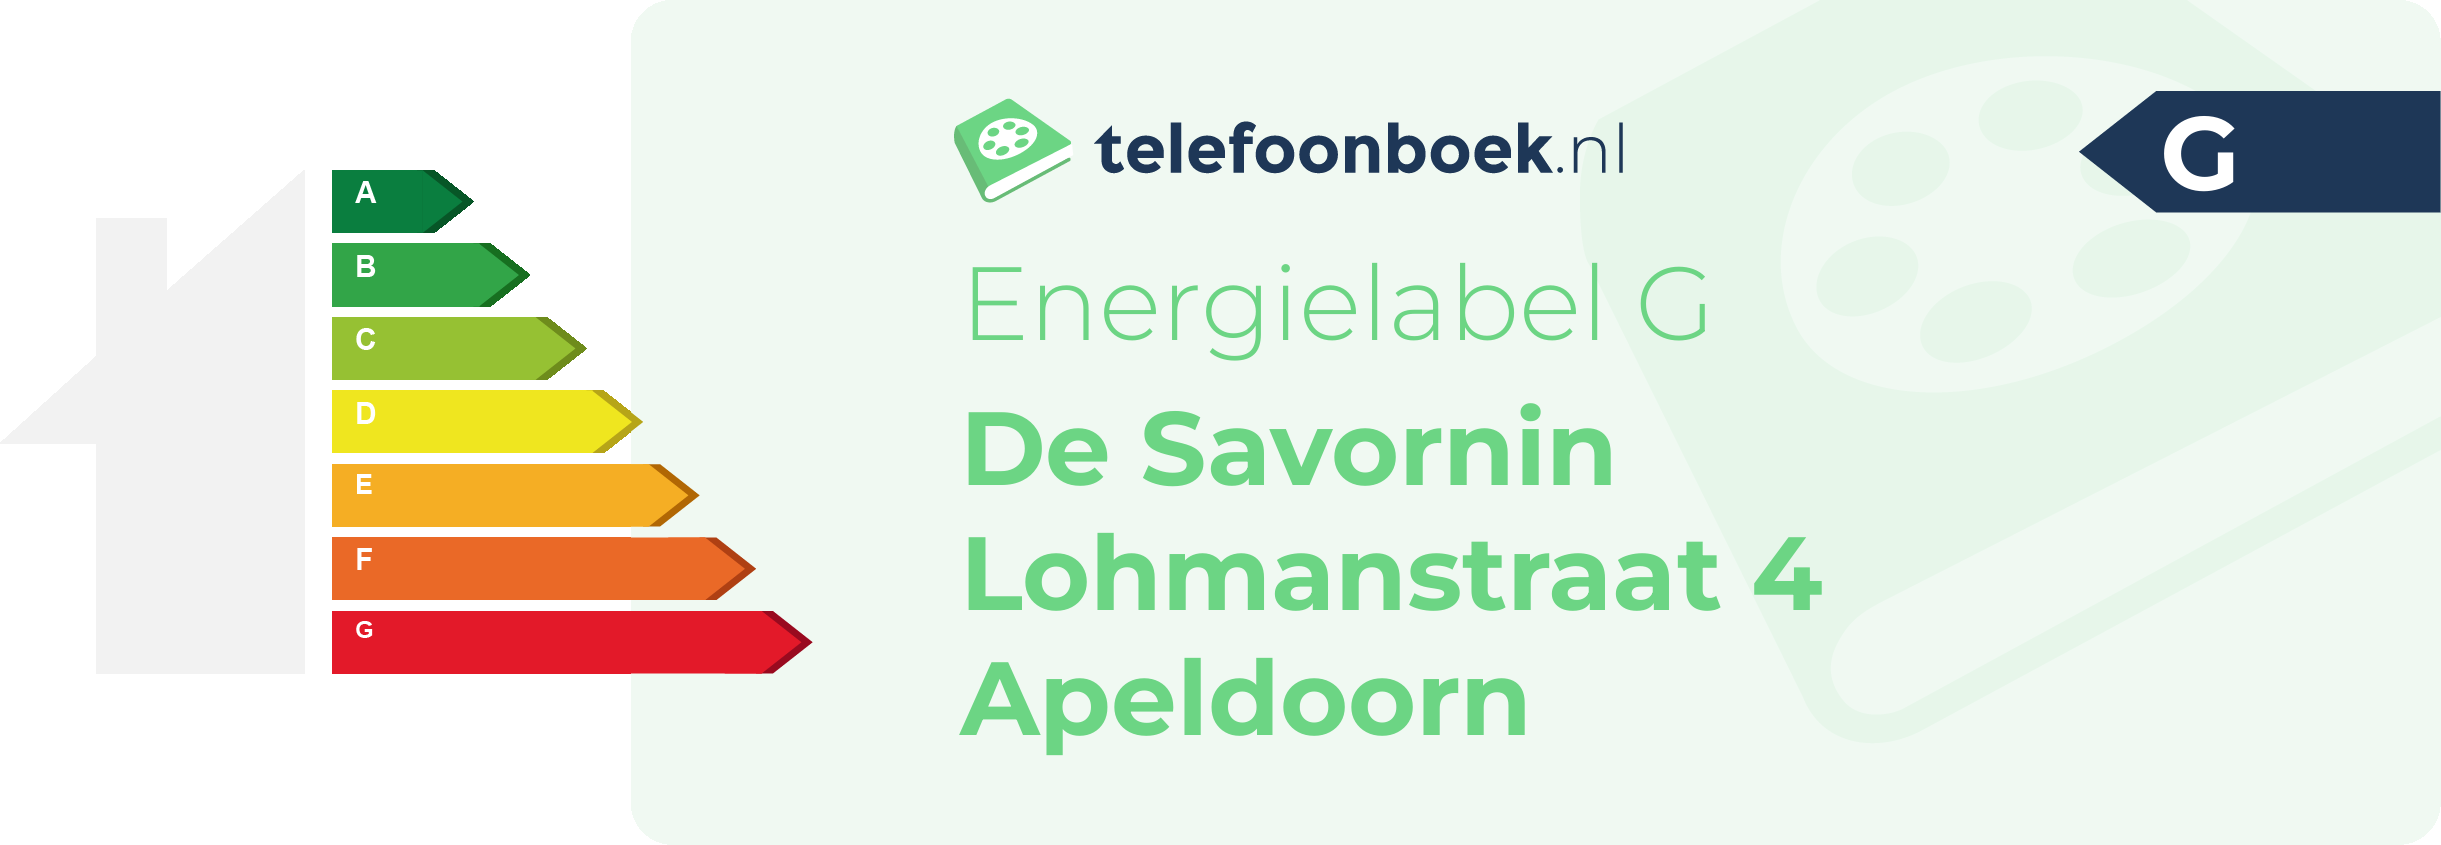 Energielabel De Savornin Lohmanstraat 4 Apeldoorn